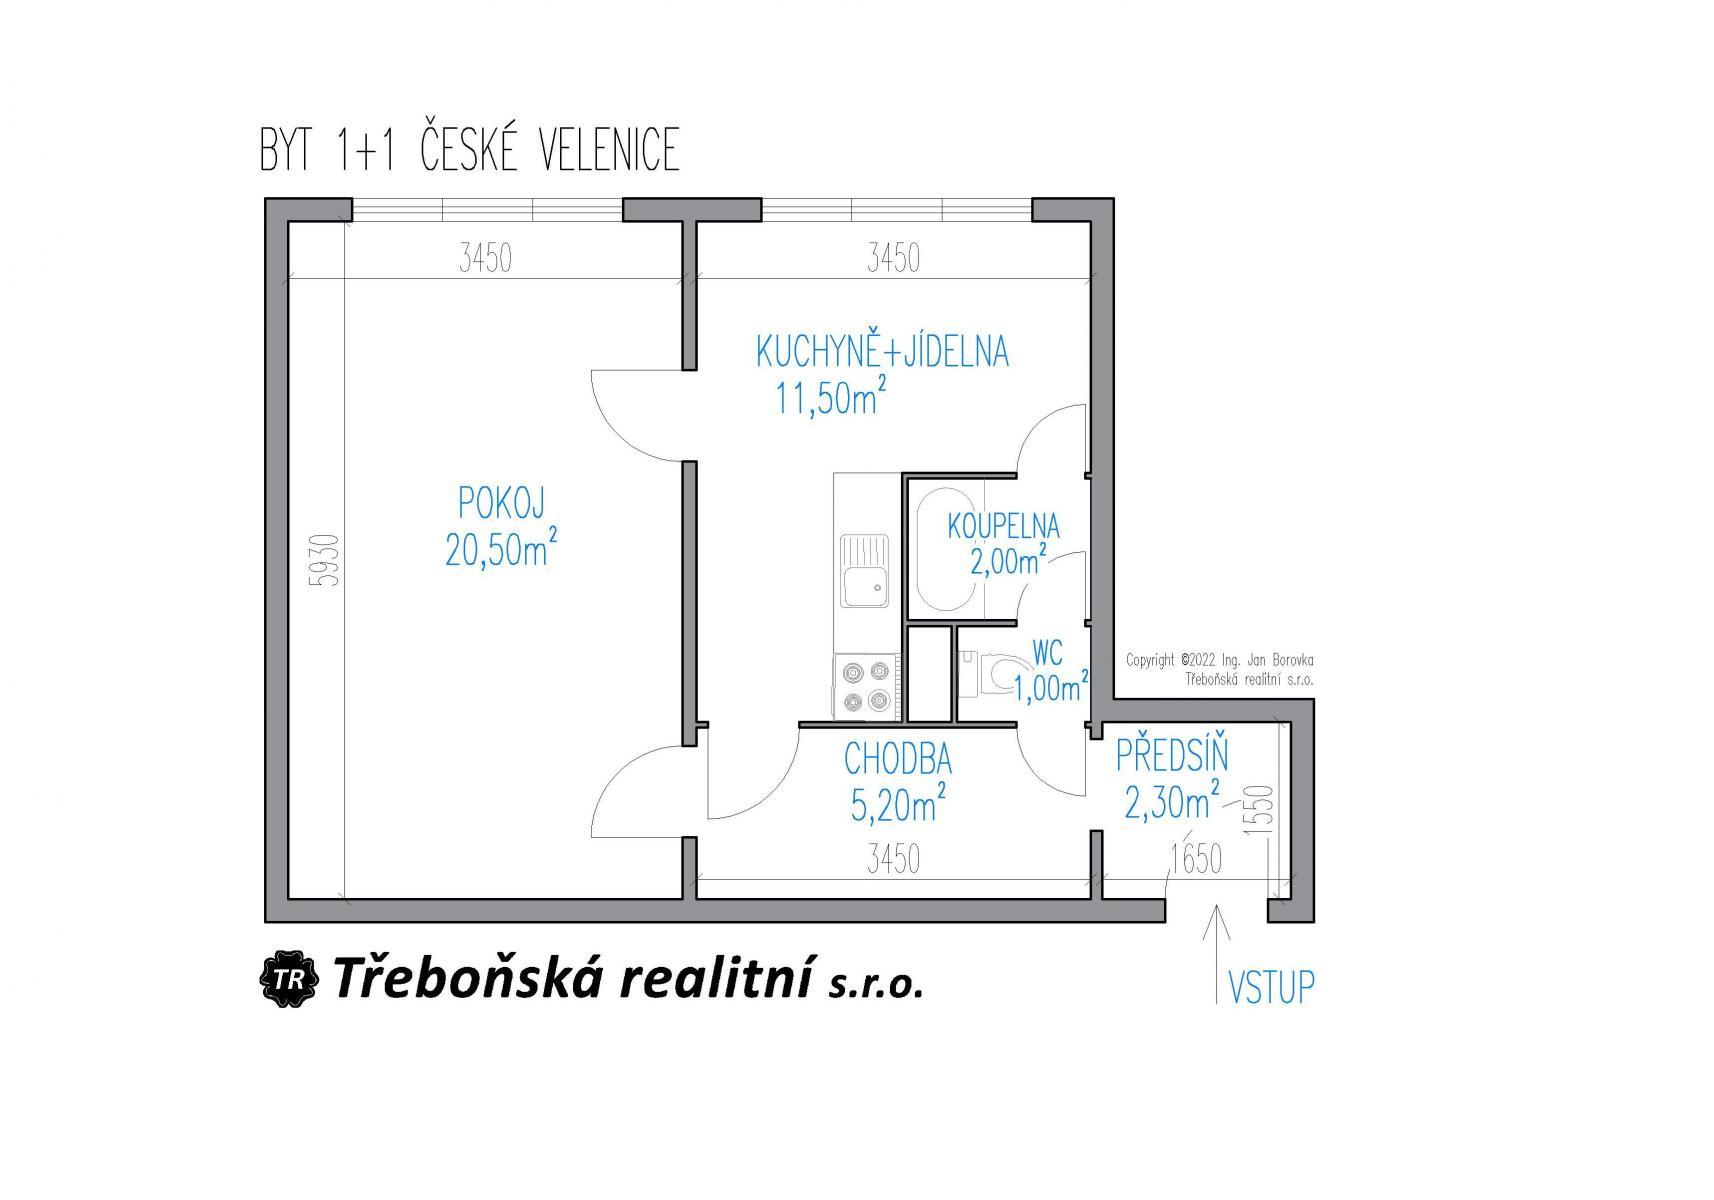 Prodej bytu 1+1 v Českých Velenicích, obrázek č. 2